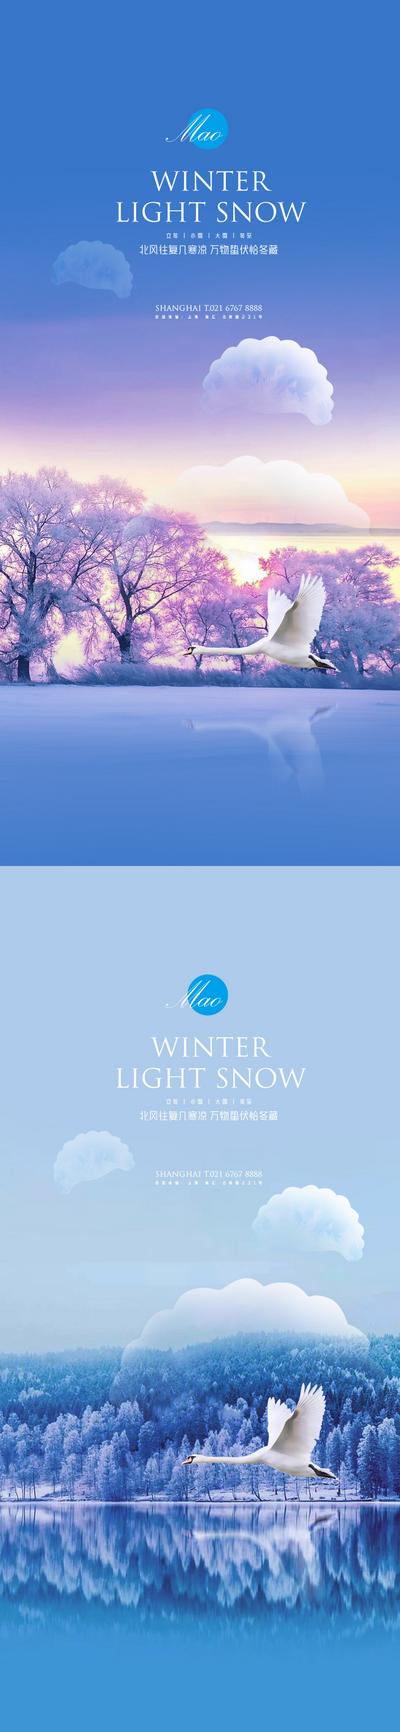 【南门网】海报 地产 二十四节气 立冬 小雪 大雪 冬至 饺子 湖泊 天鹅 创意